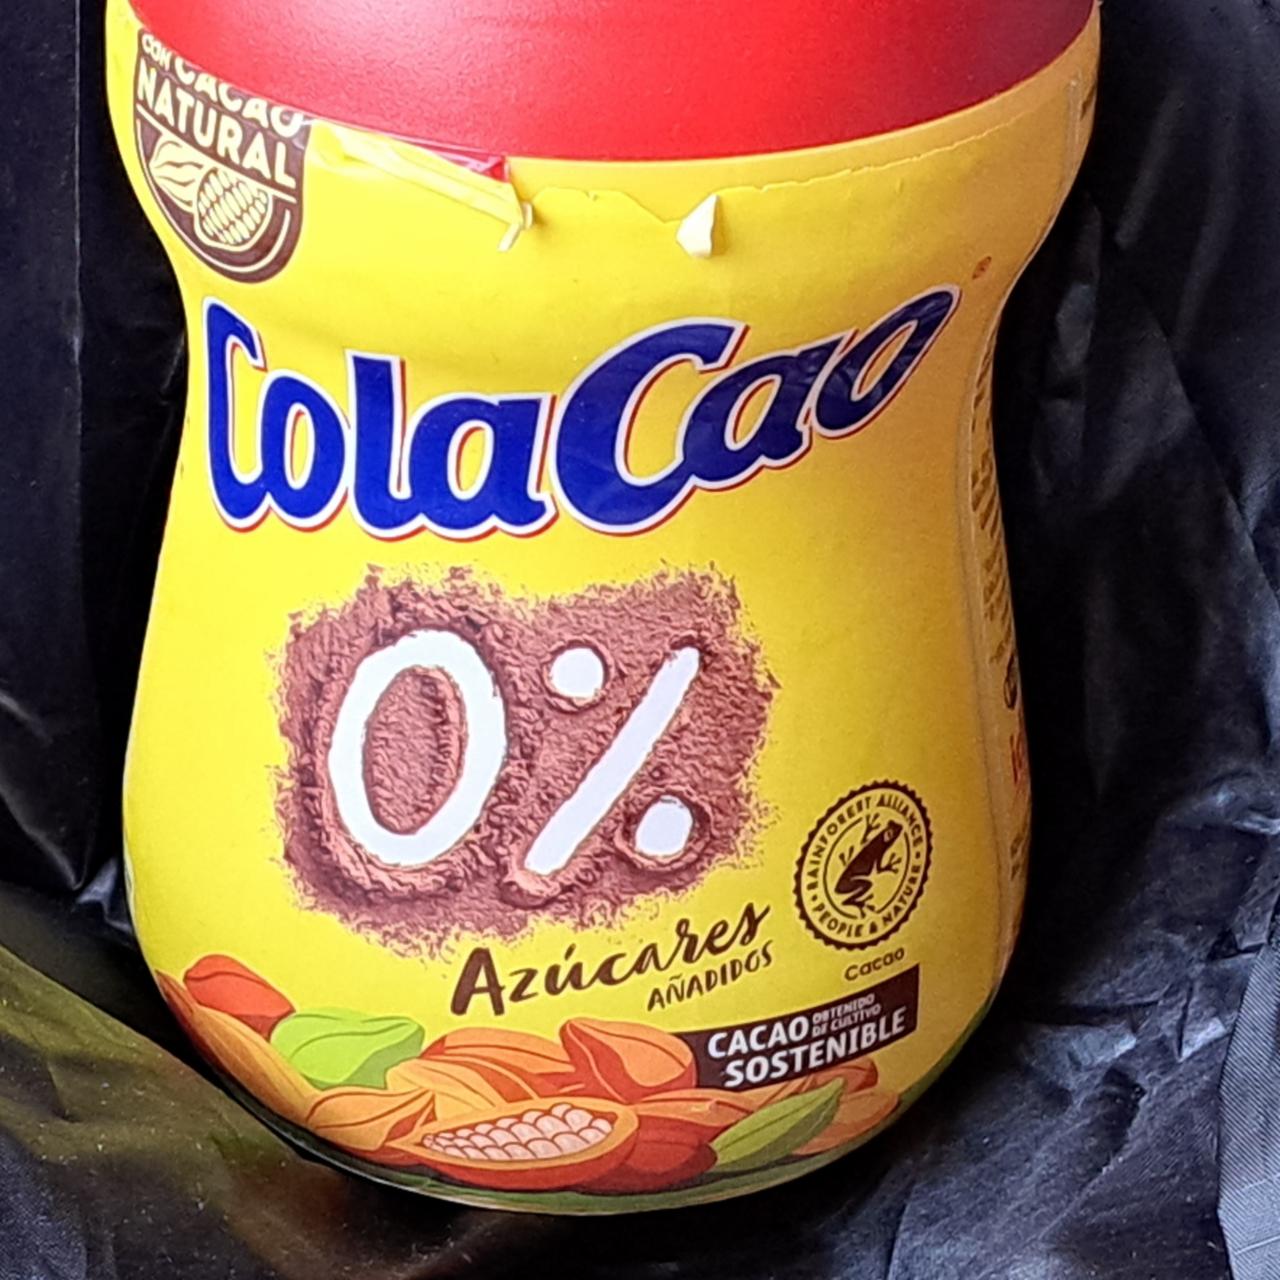 Fotografie - Cola cao 0% cukru Azúcares